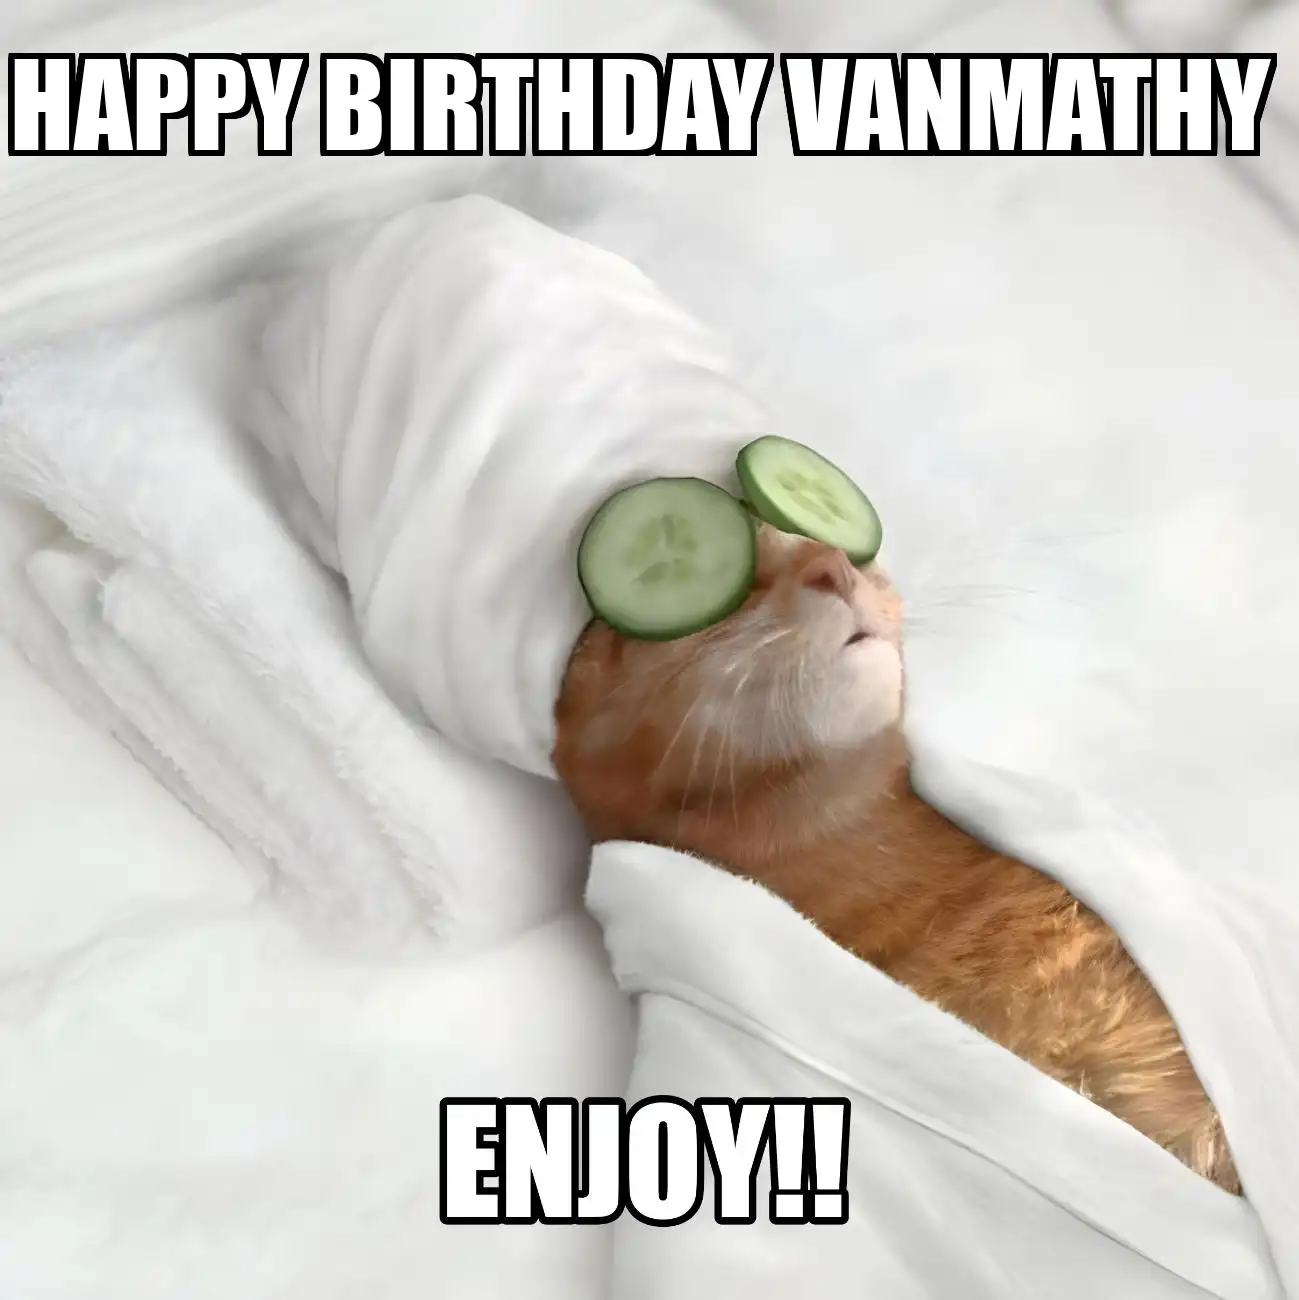 Happy Birthday Vanmathy Enjoy Cat Meme